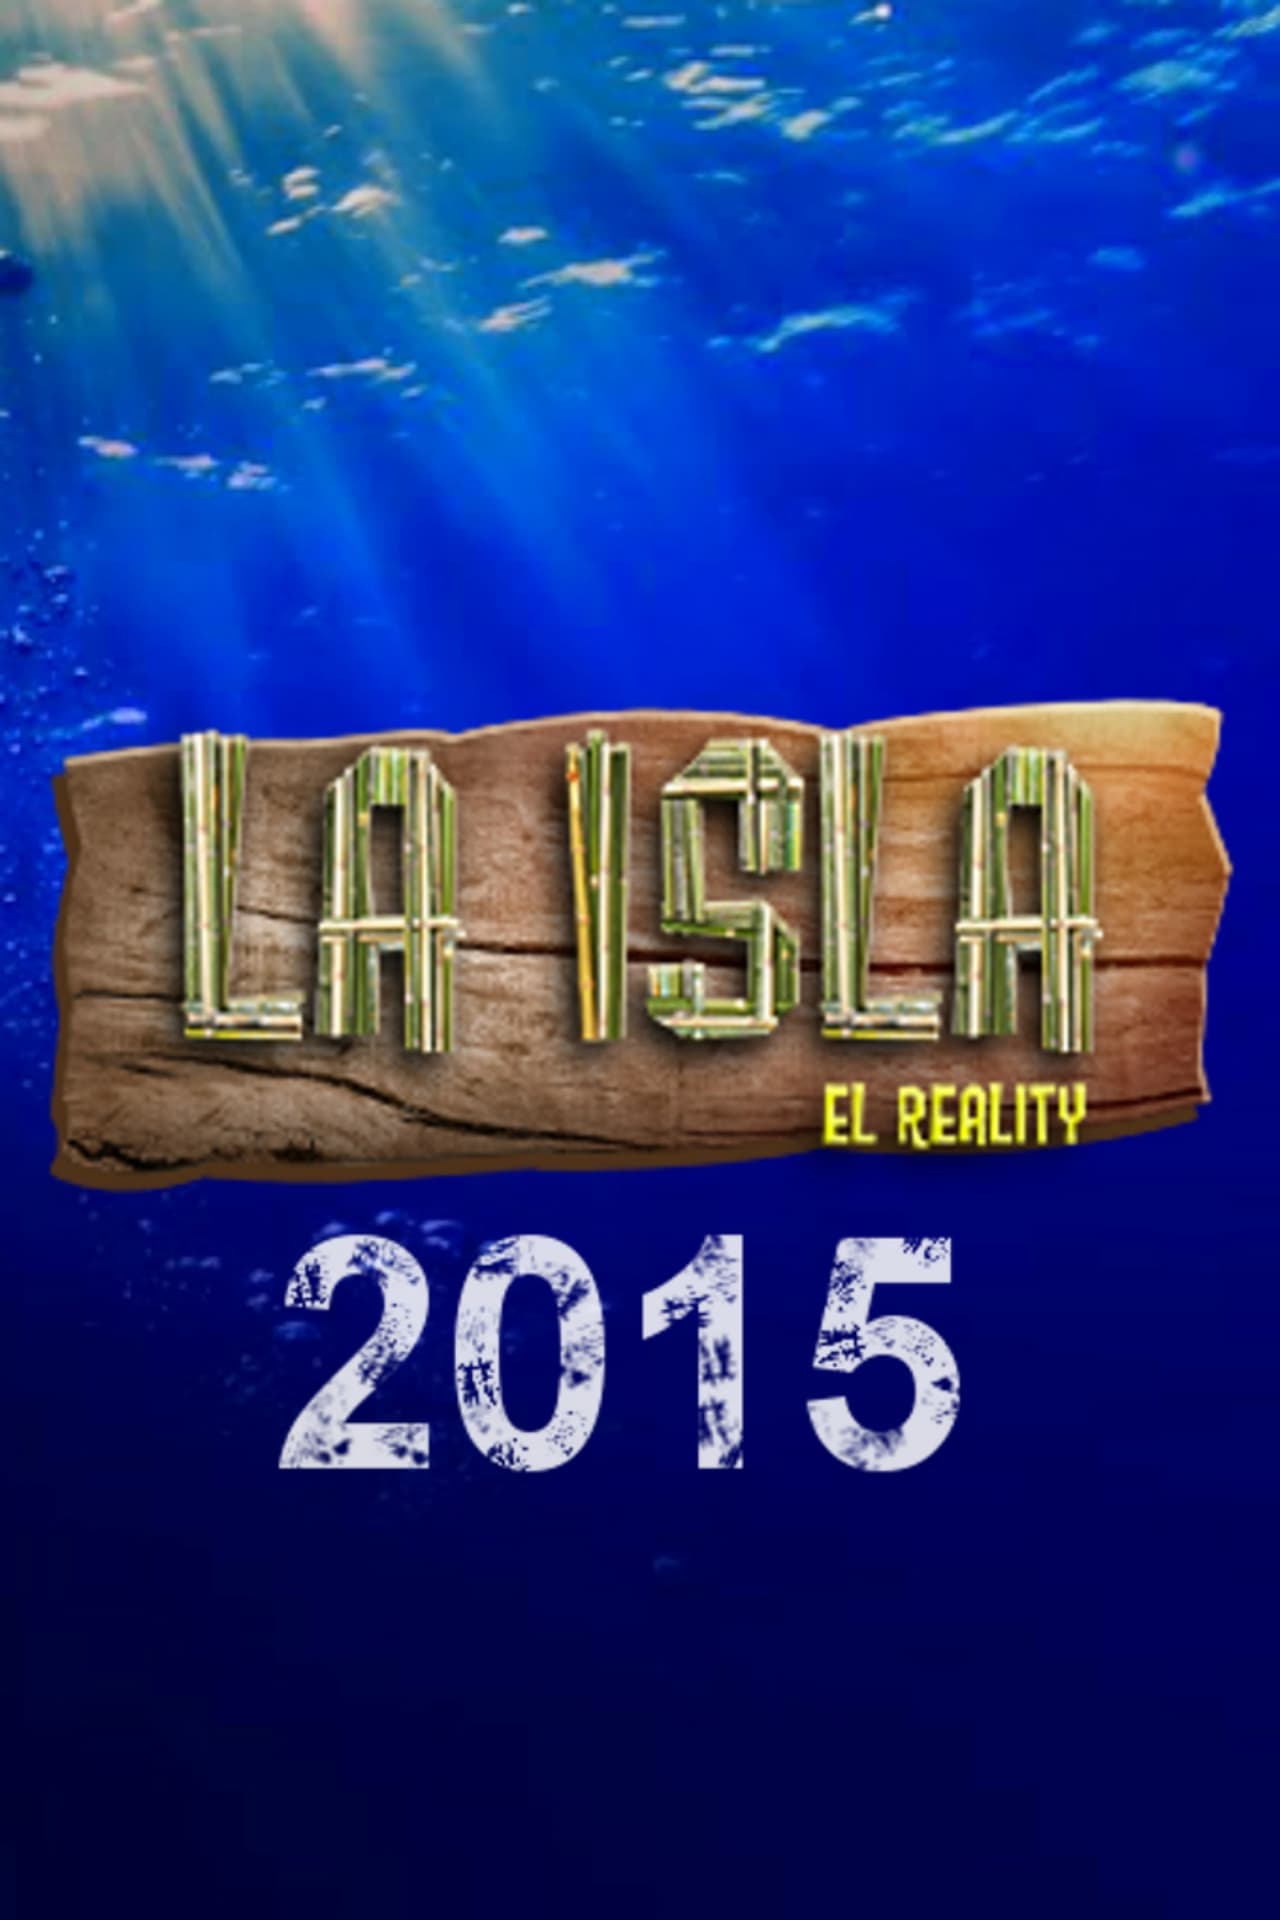 La Isla: El Reality Season 4